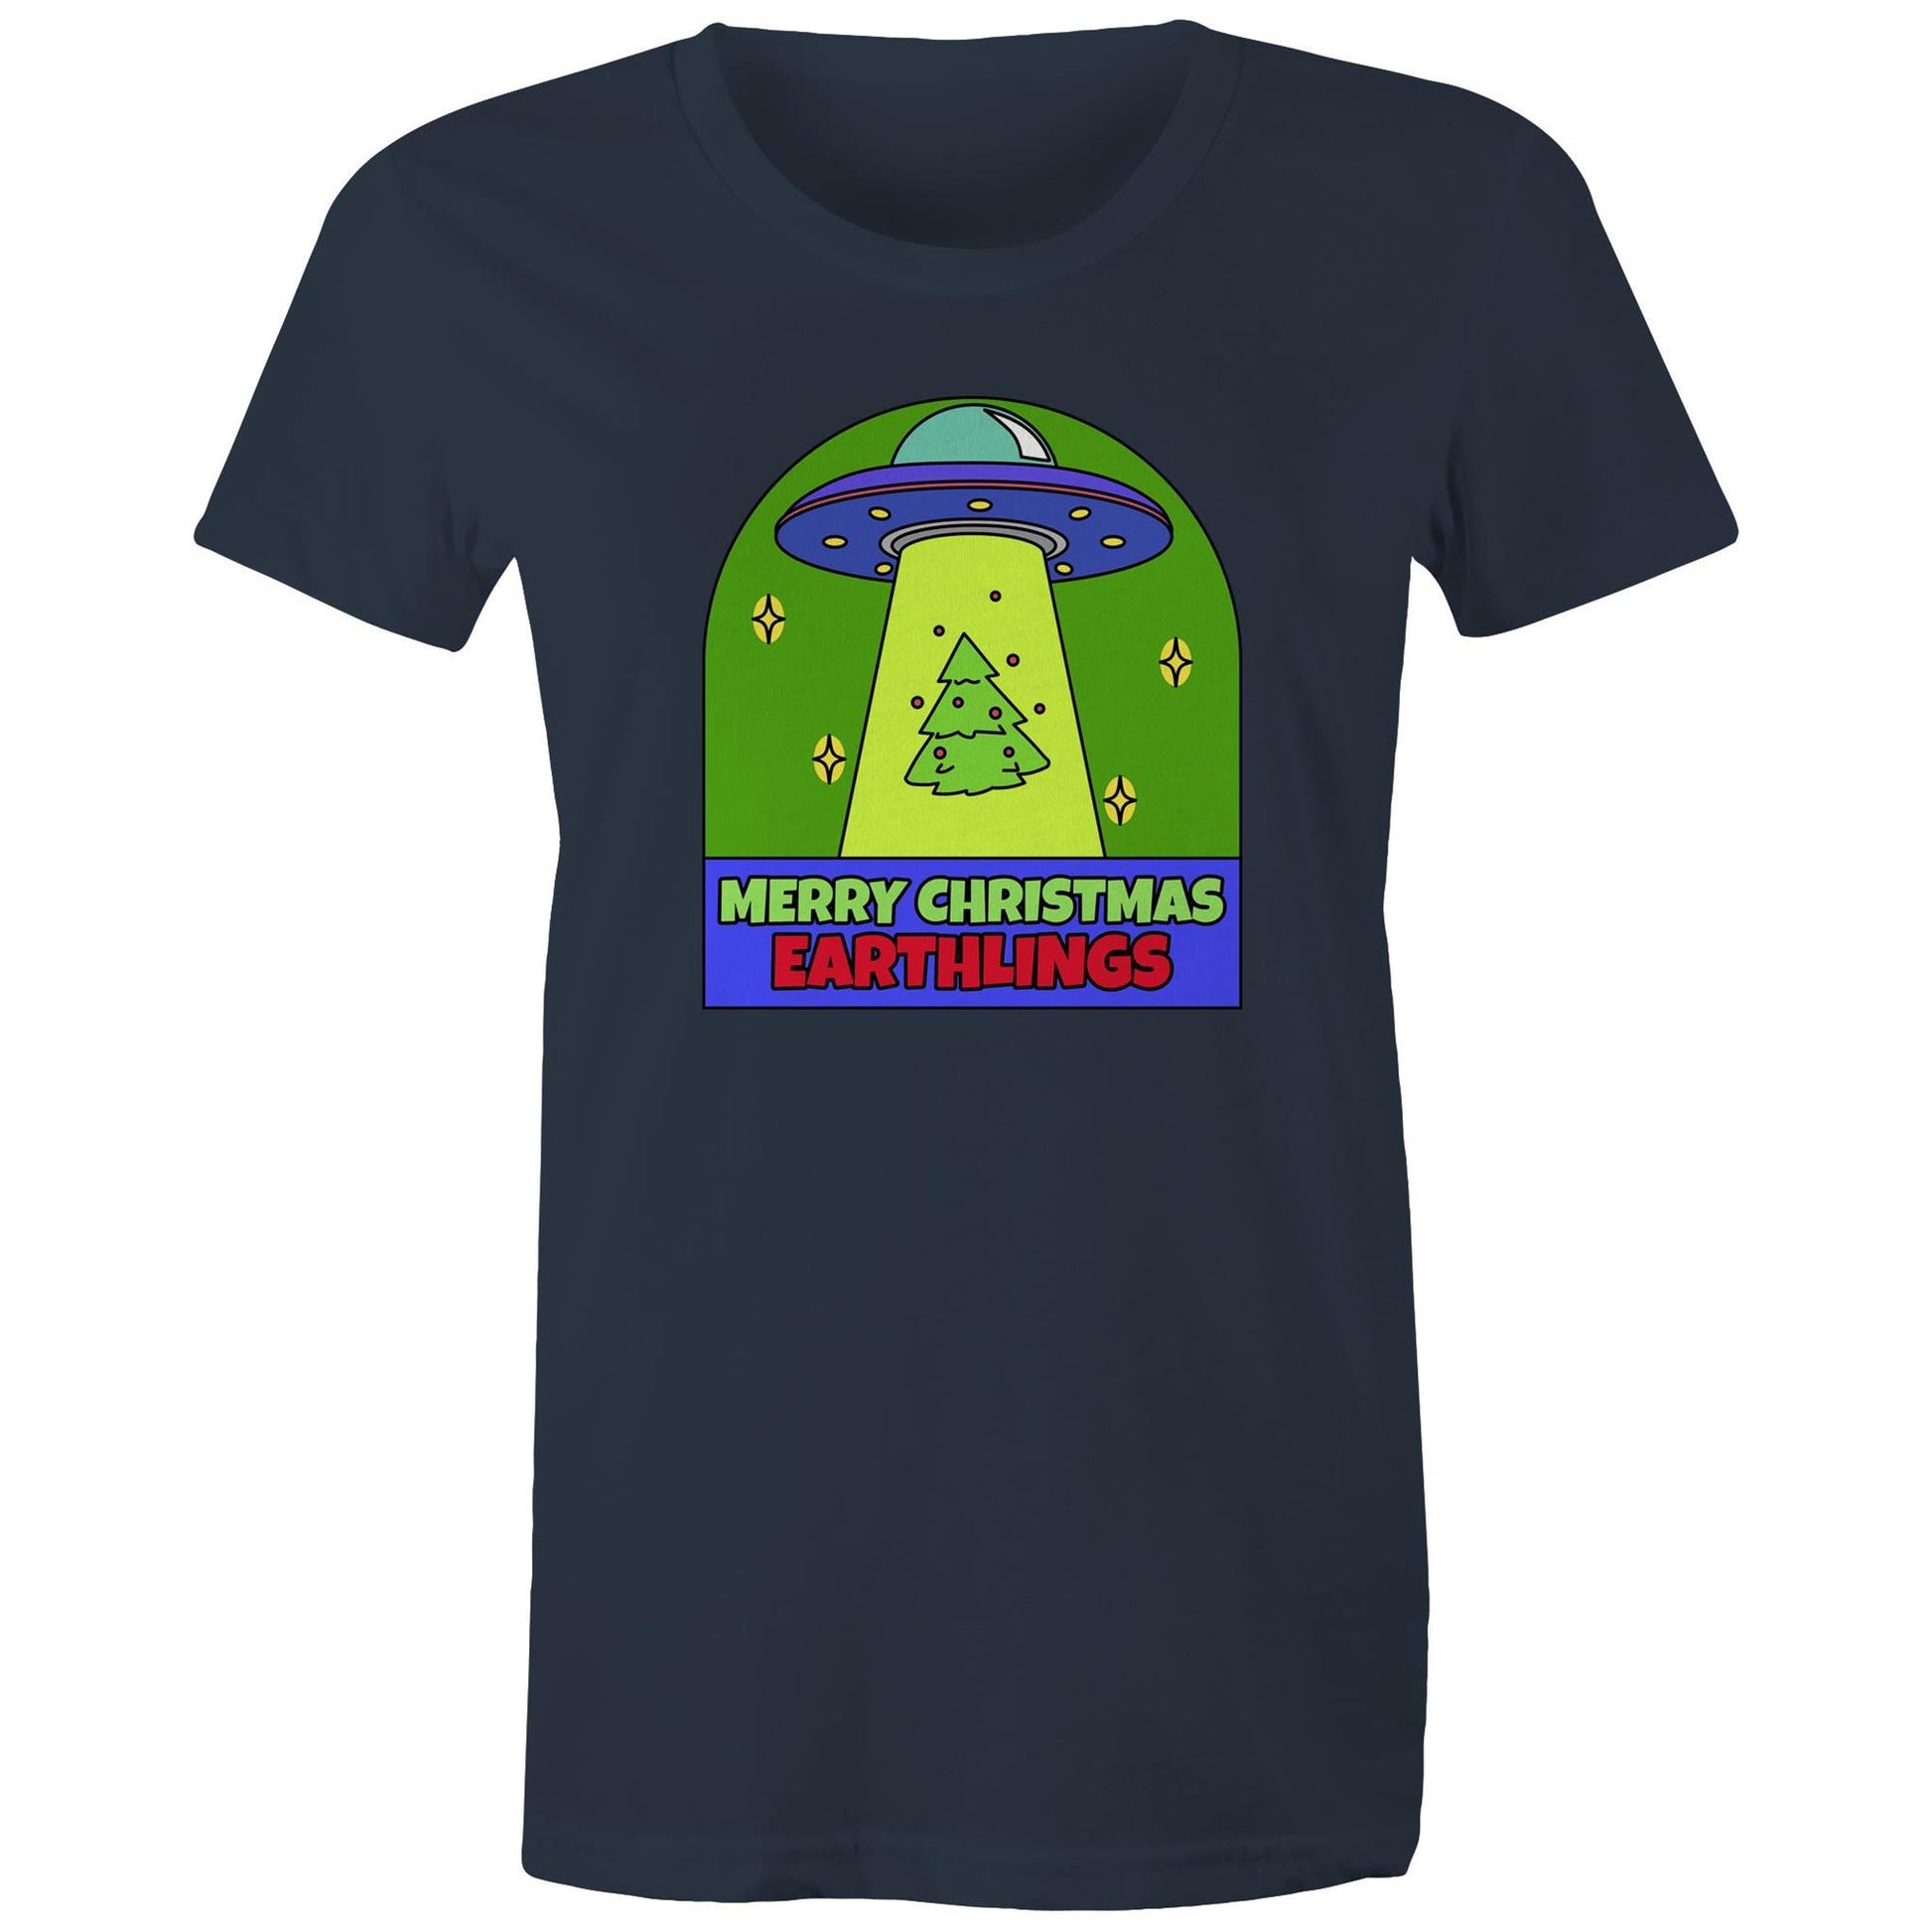 Merry Christmas Earthlings, UFO - Womens T-shirt Navy Christmas Womens T-shirt Merry Christmas